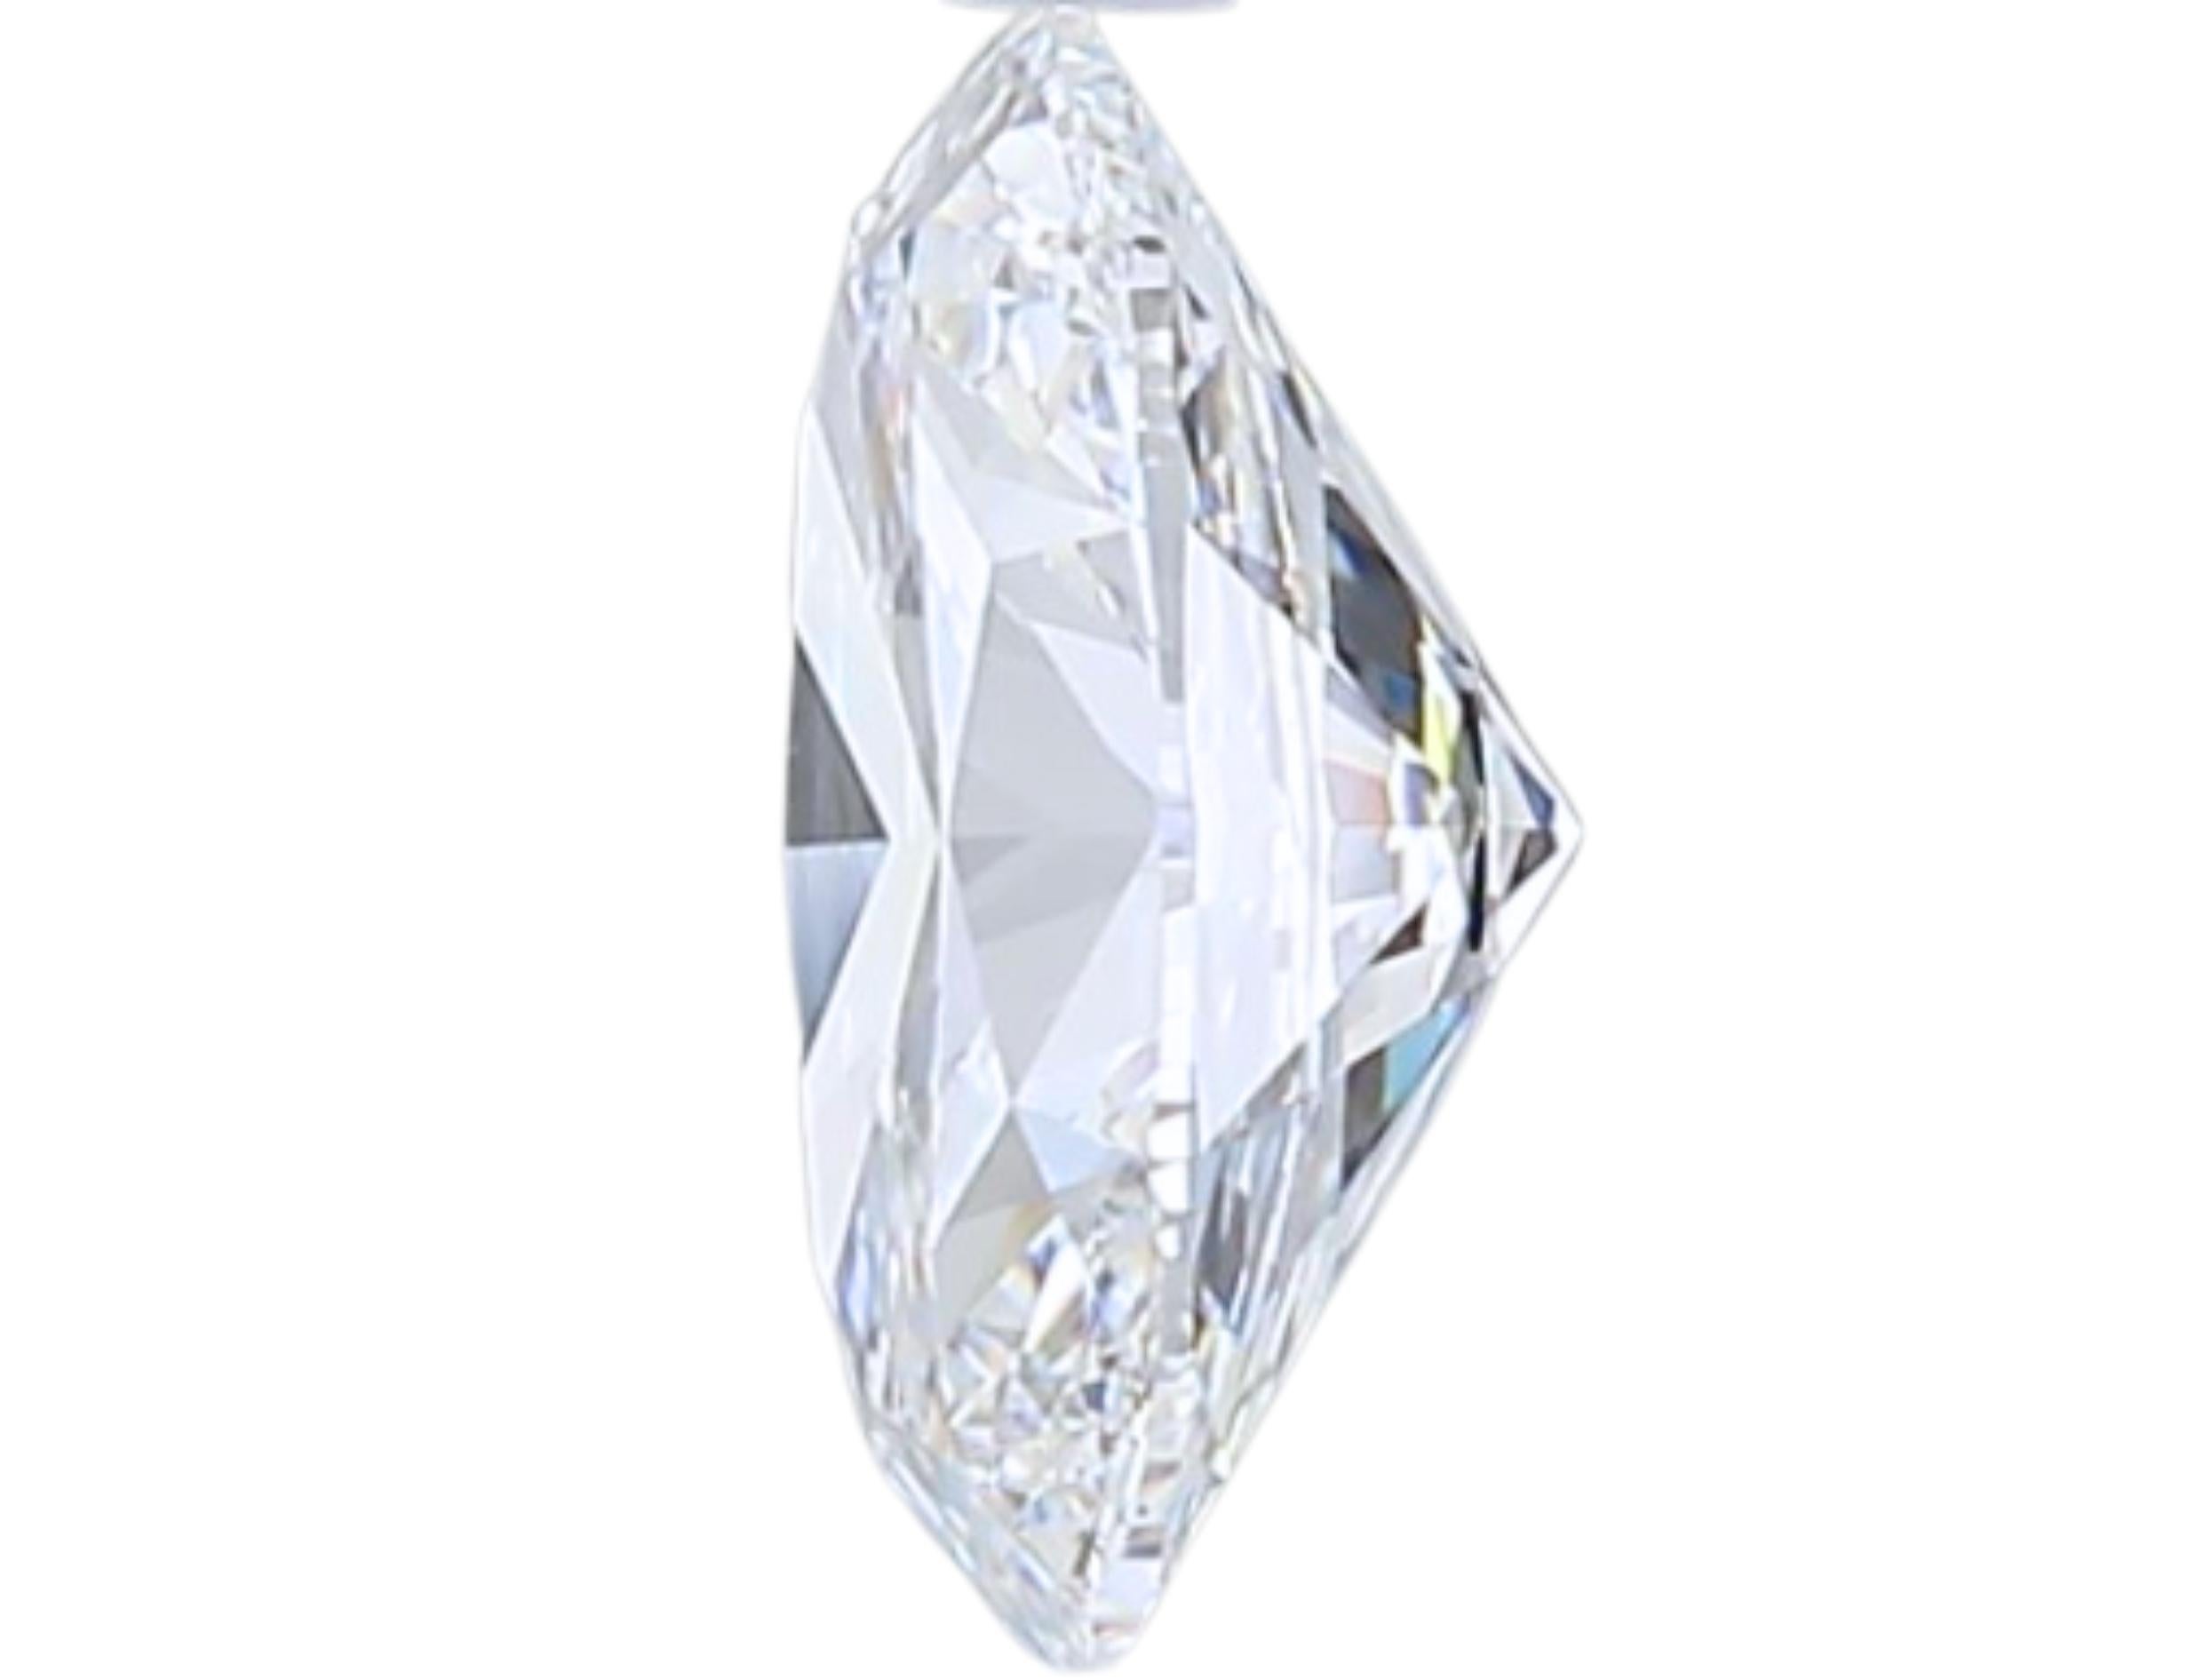 Women's Luxurious 1.02 carat Oval Cut Brilliant Diamond For Sale